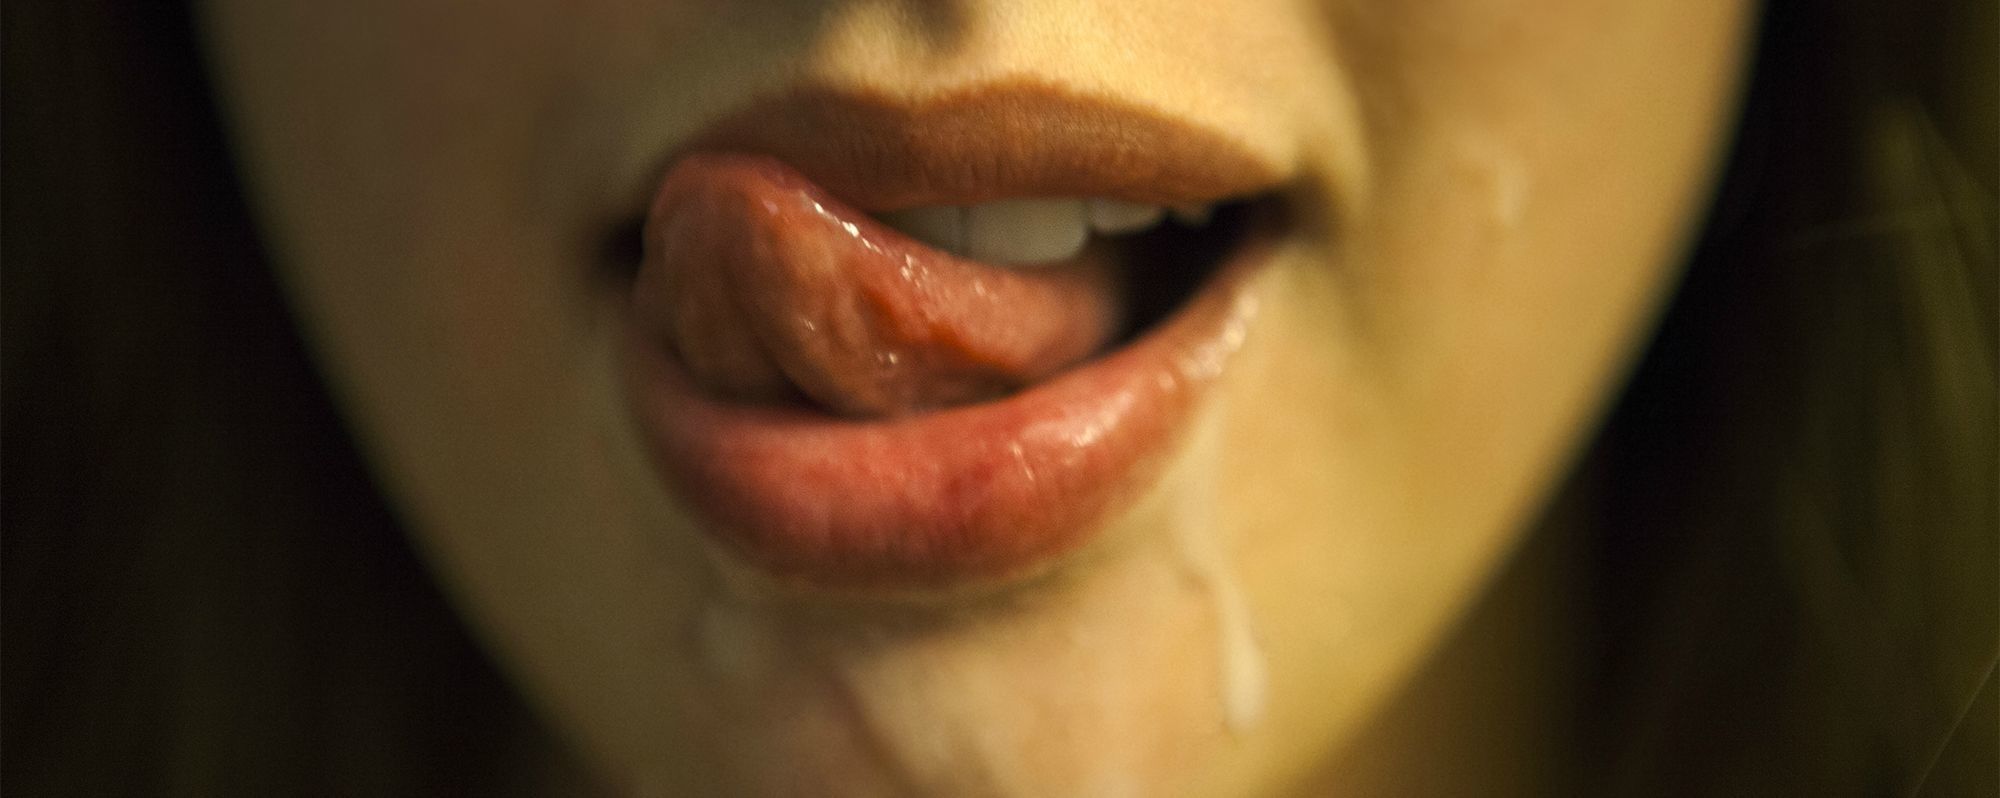 Cum in her throat close ups